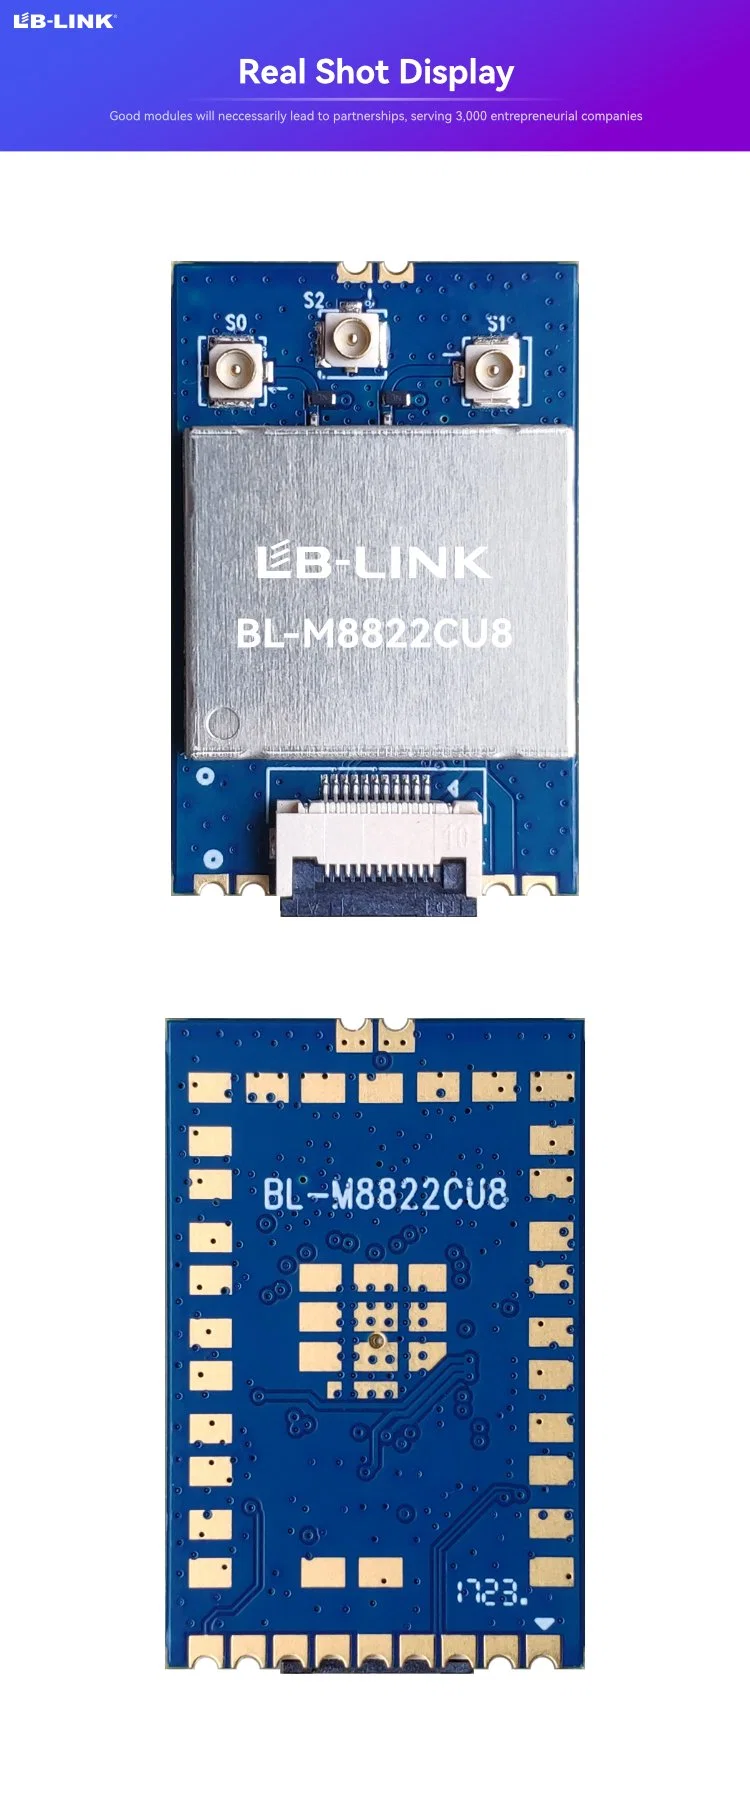 LB-LINK BL-M8822CU8 IPTV módulo sólo para teléfono función de tarjeta inalámbrica B5,0 Con B Baja Energía todo en una red Gigabit WiFi Banda base WLAN compatible con tarjeta 2T2R